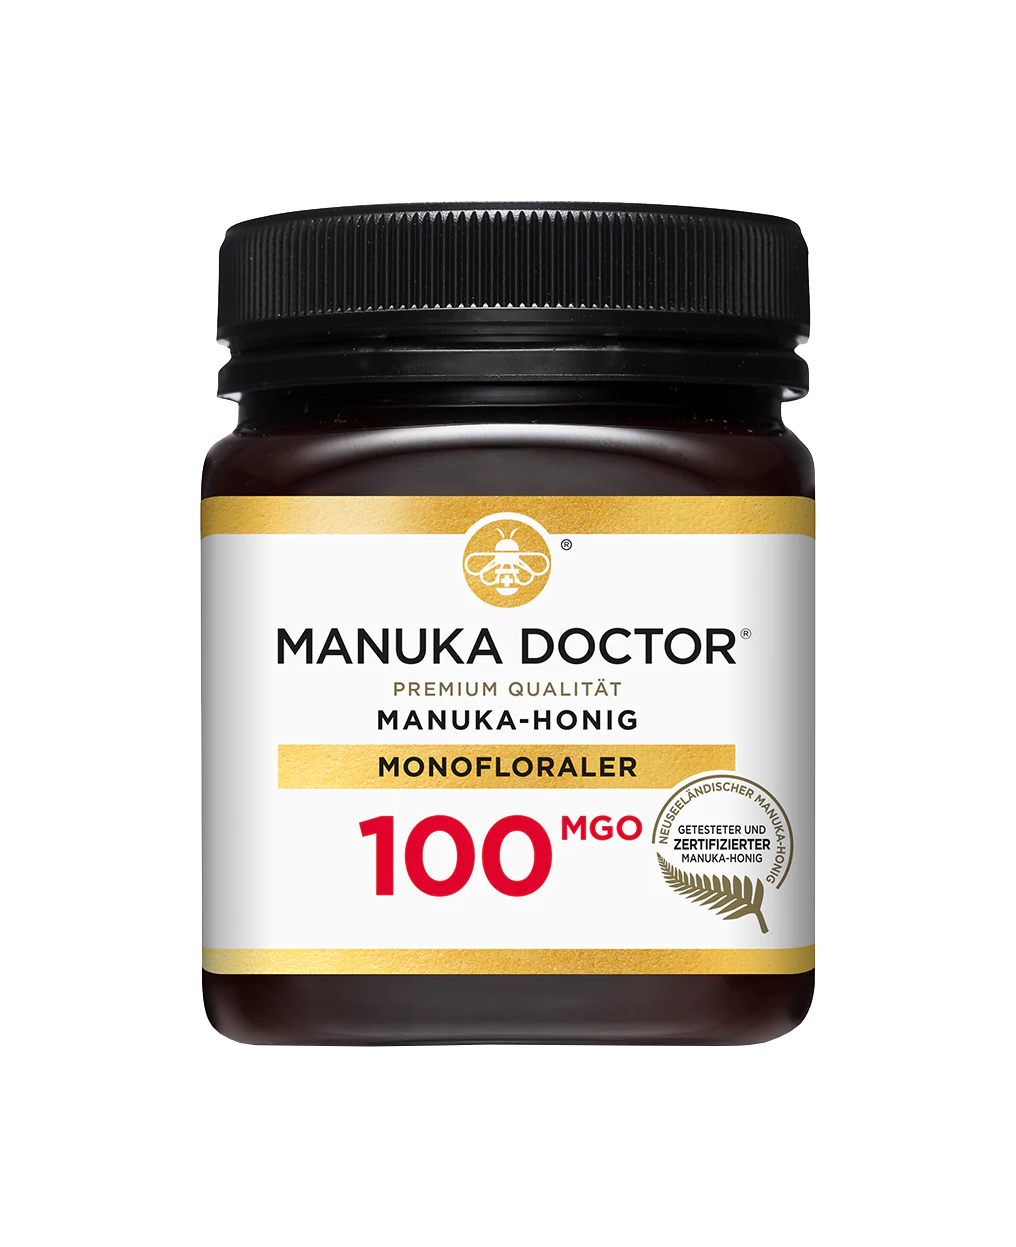 Manuka Doctor mit 100 MGO